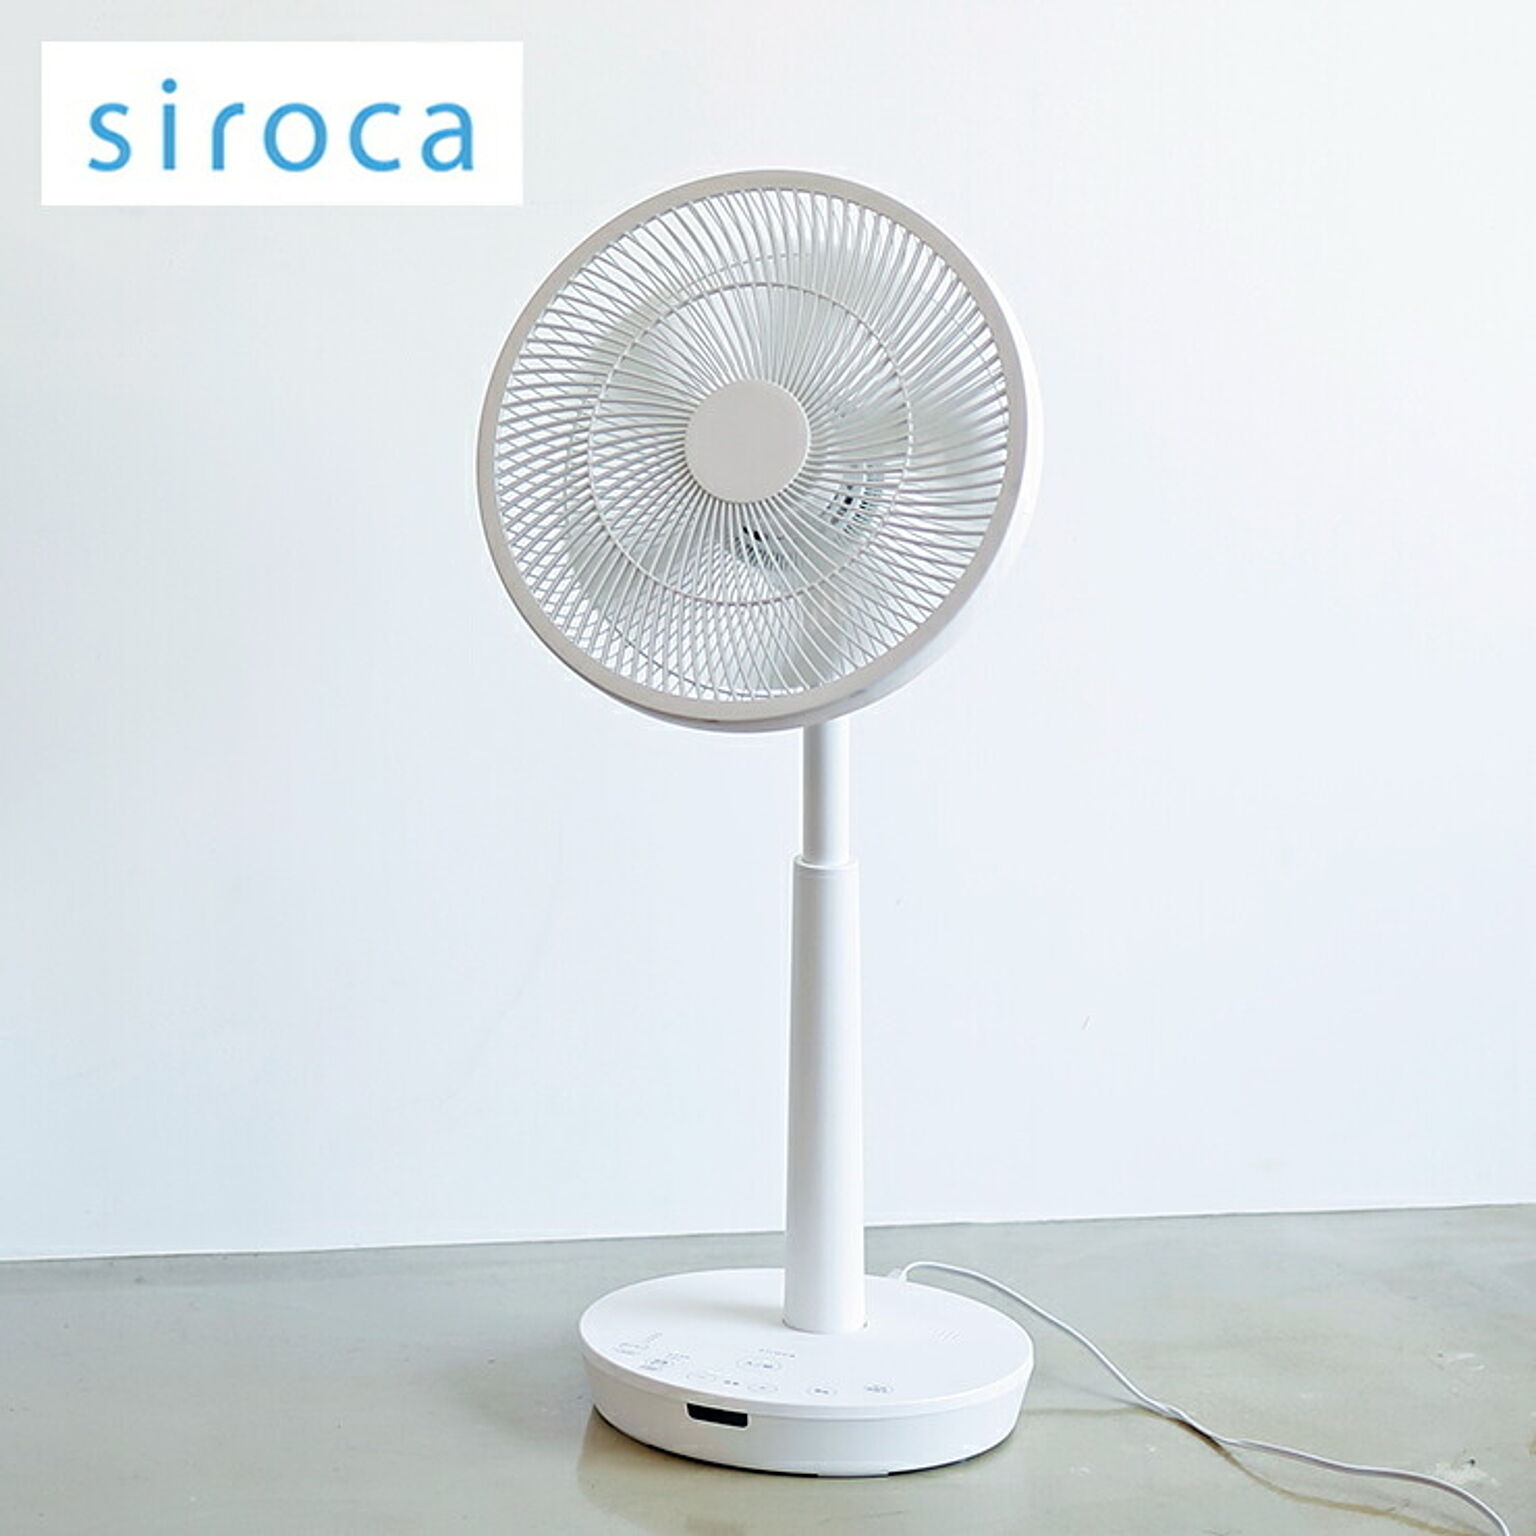 siroca シロカ DC音声操作 サーキュレーター 扇風機 ポチ扇 リビング扇 DCモーター SF-V152